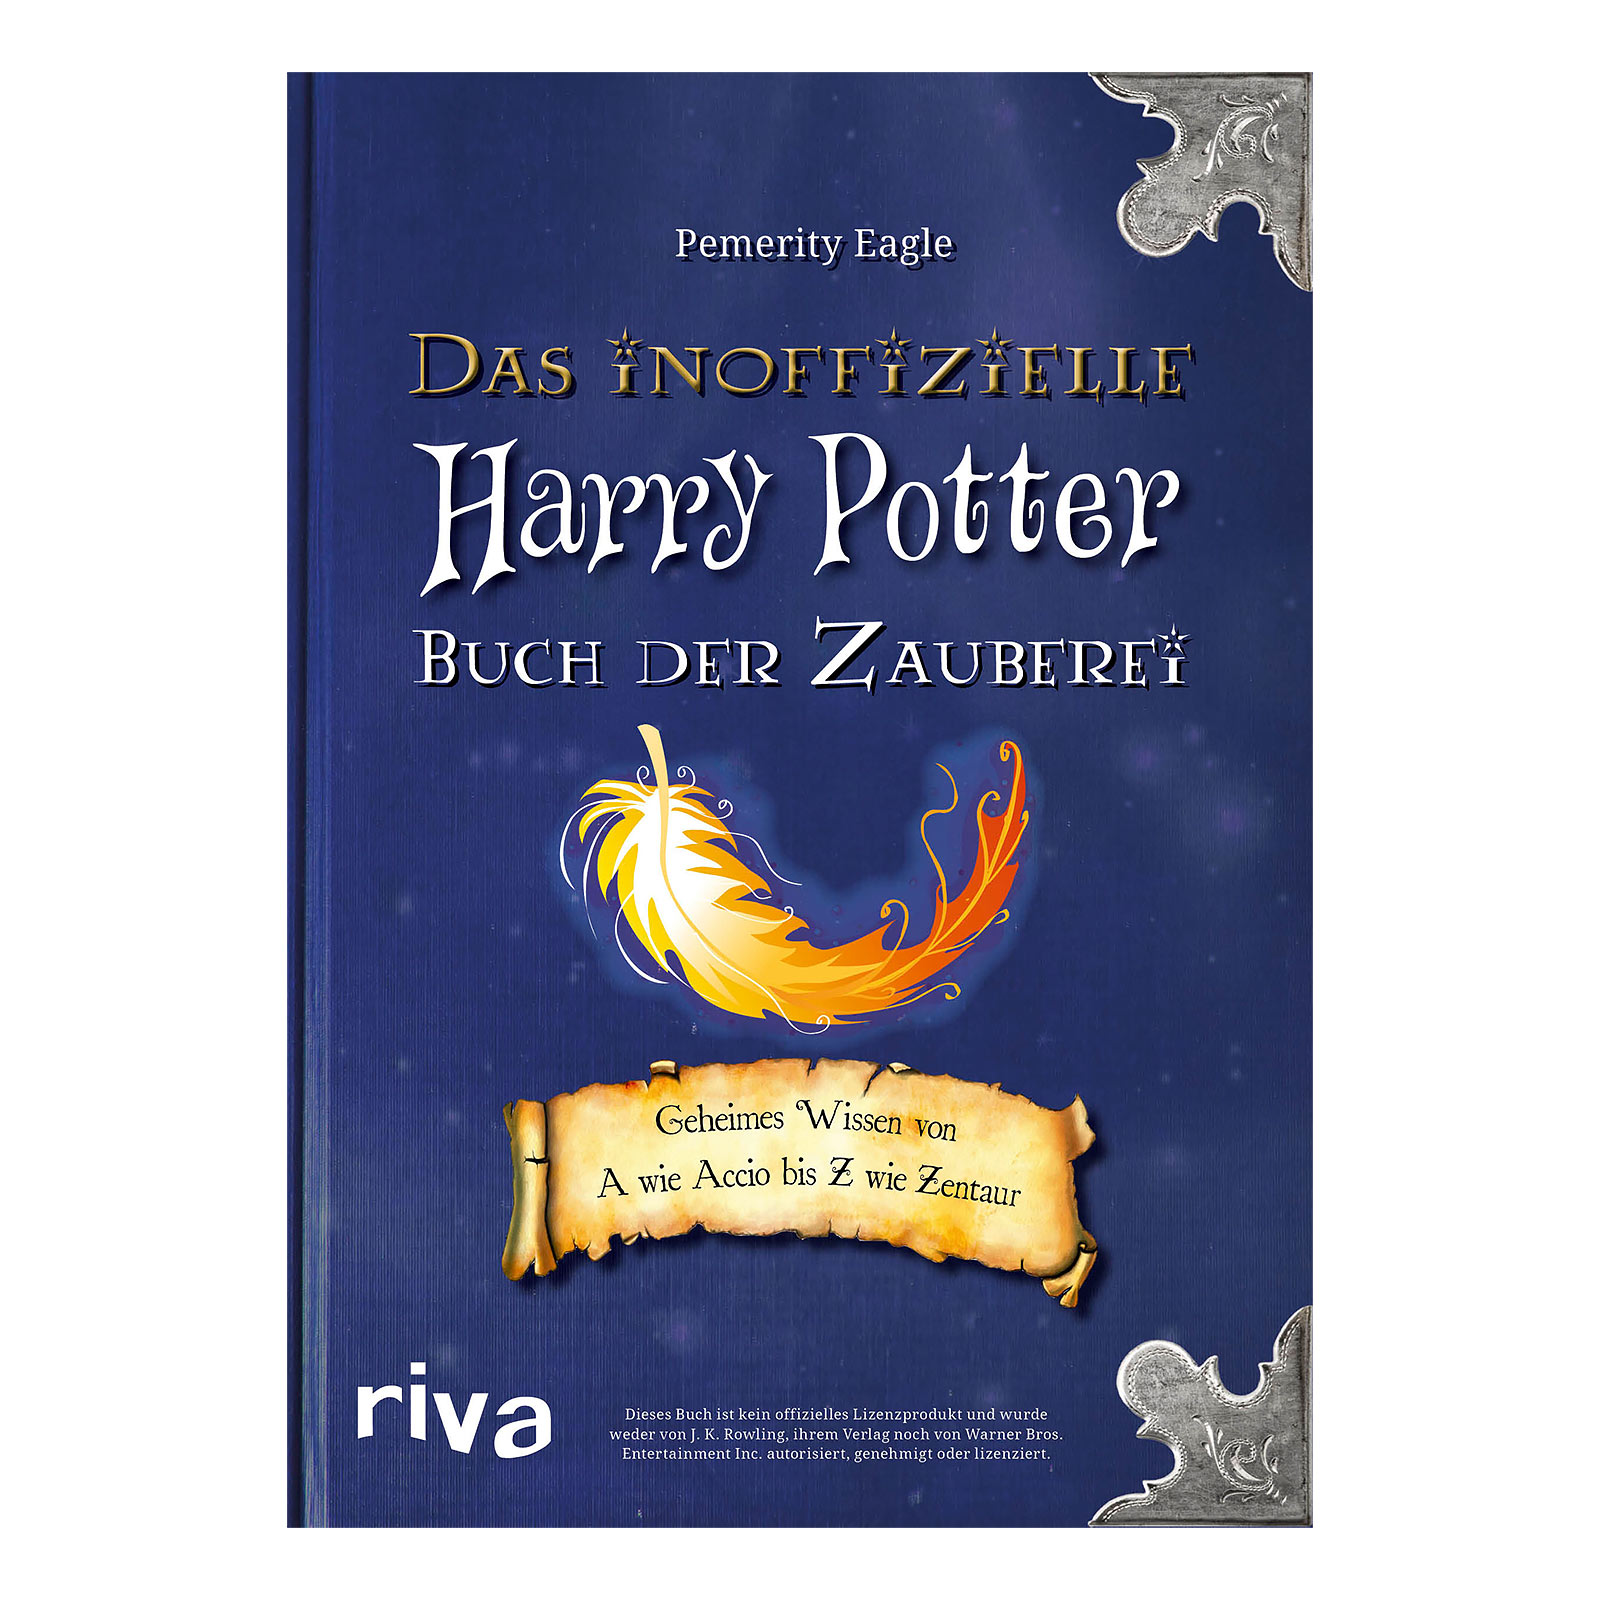 Harry Potter - Das inoffizielle Buch der Zauberei